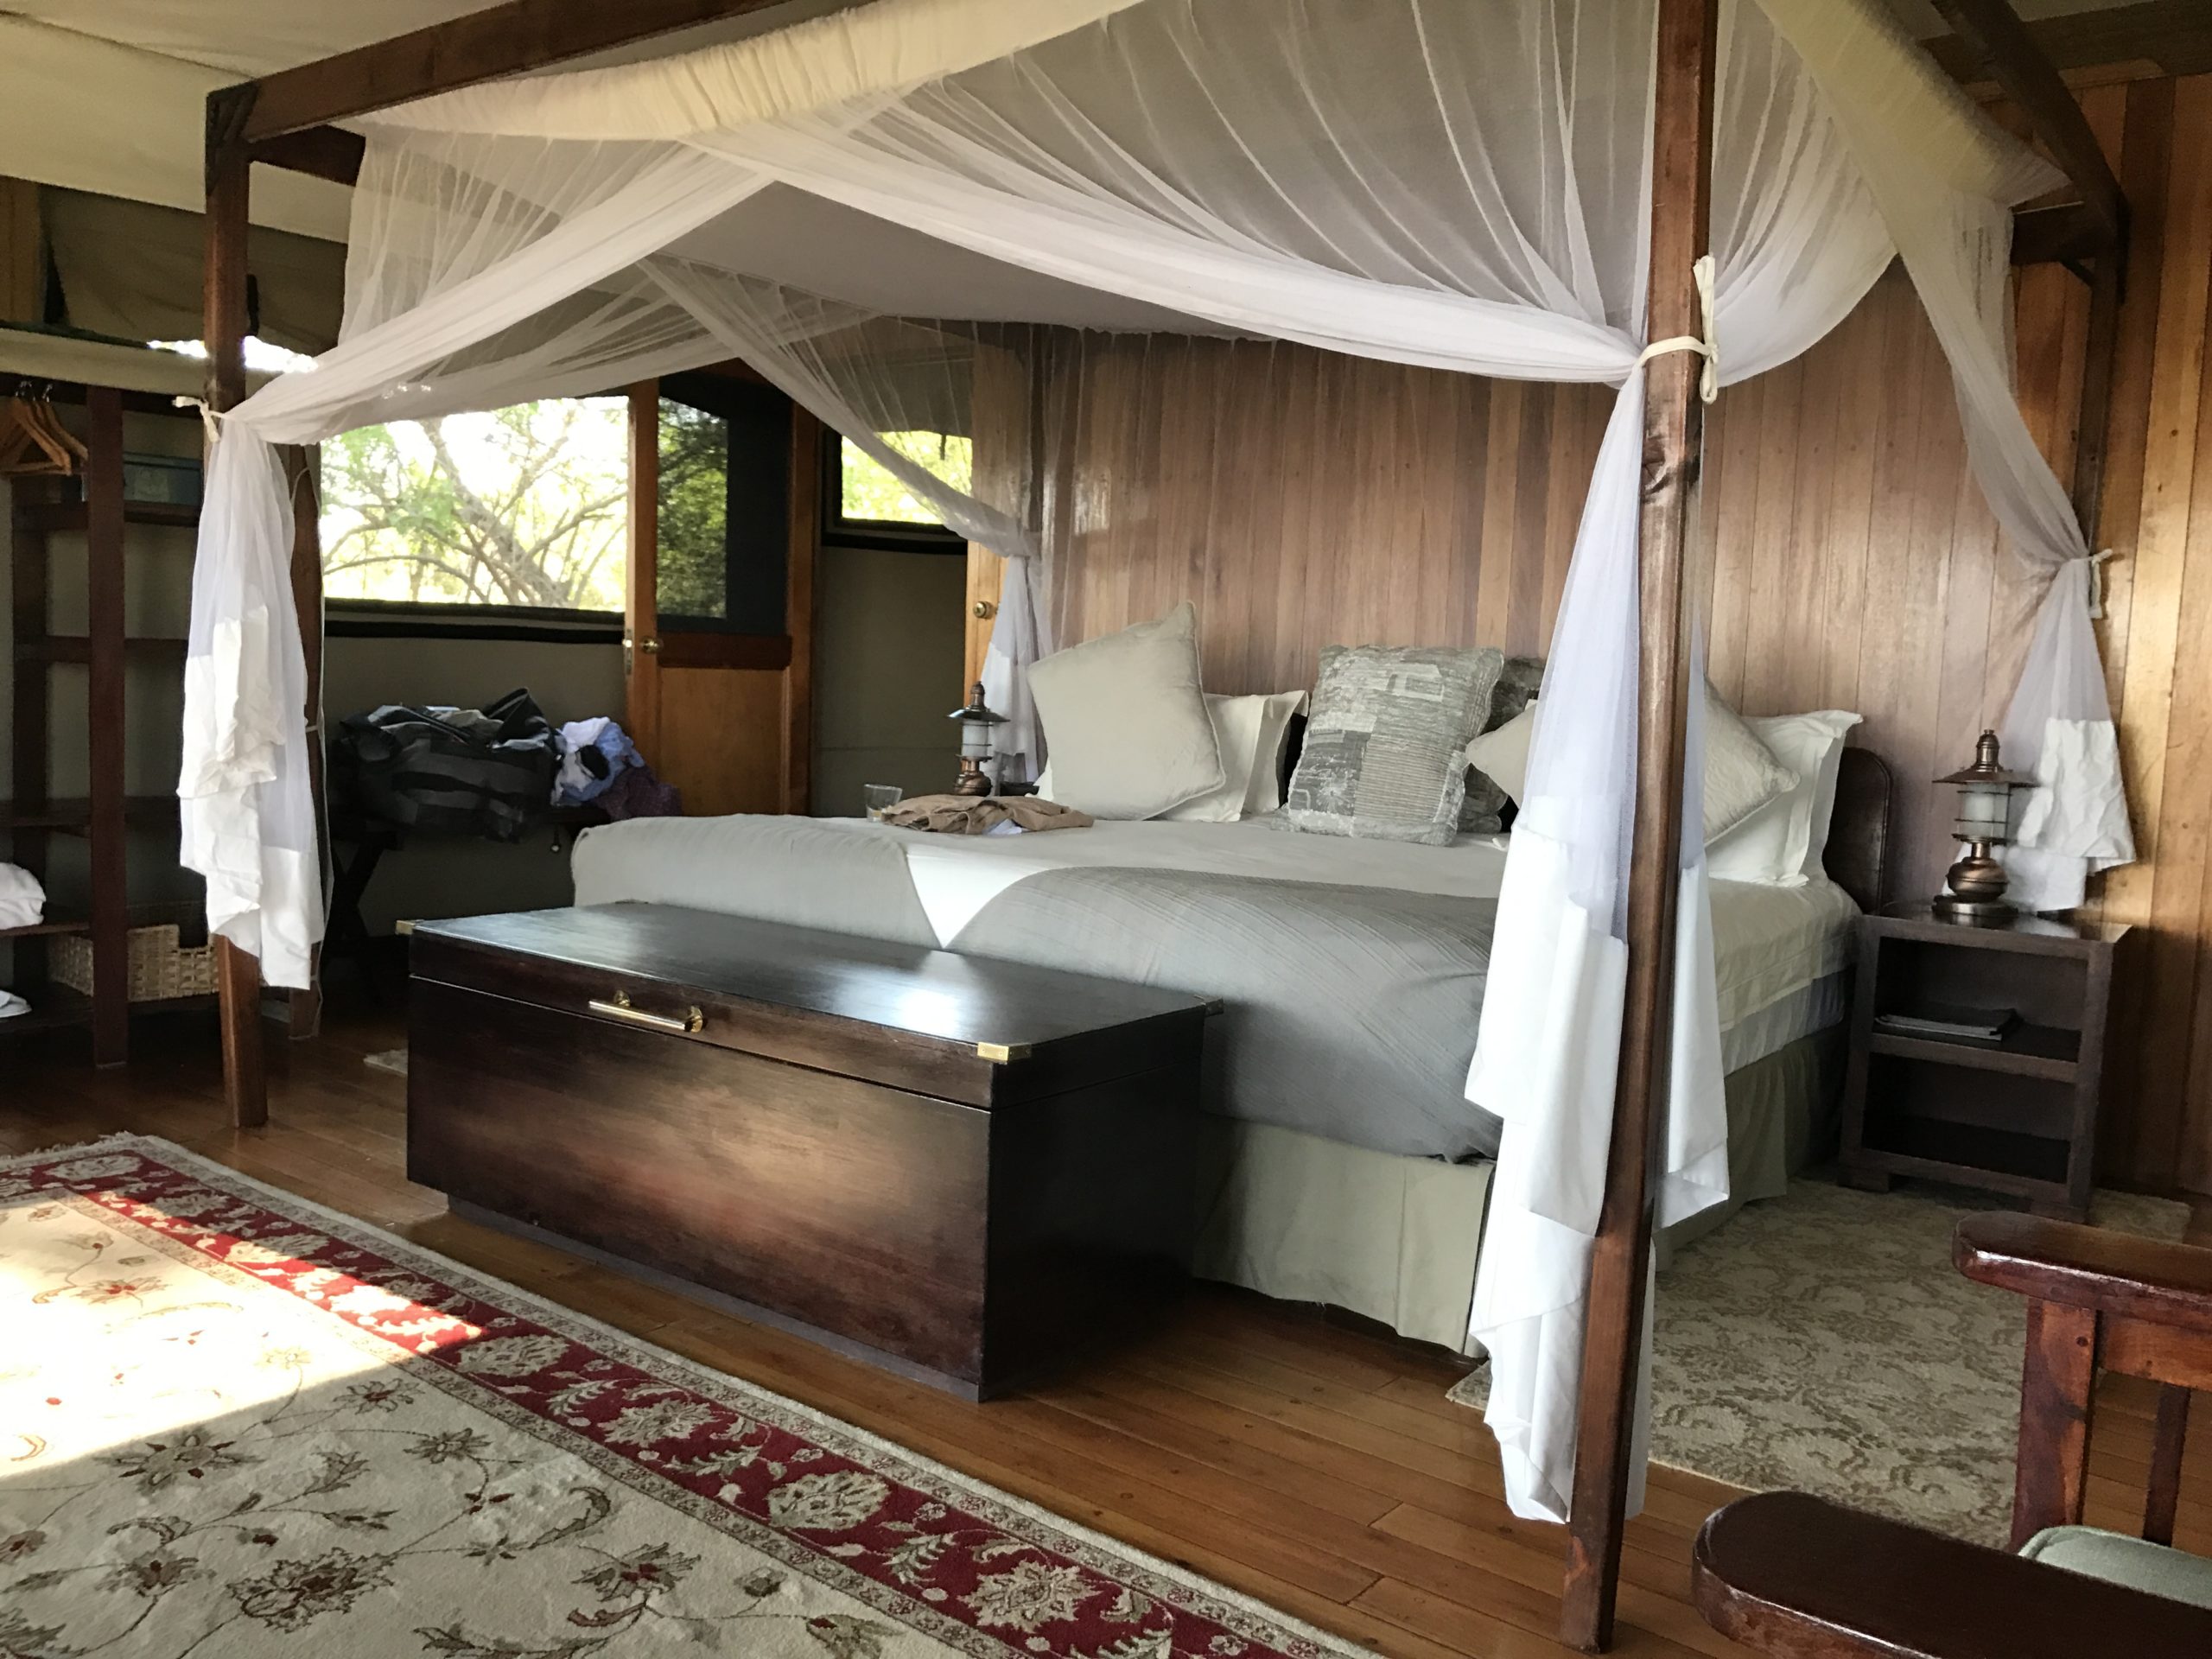 Camp Bedroom on safari